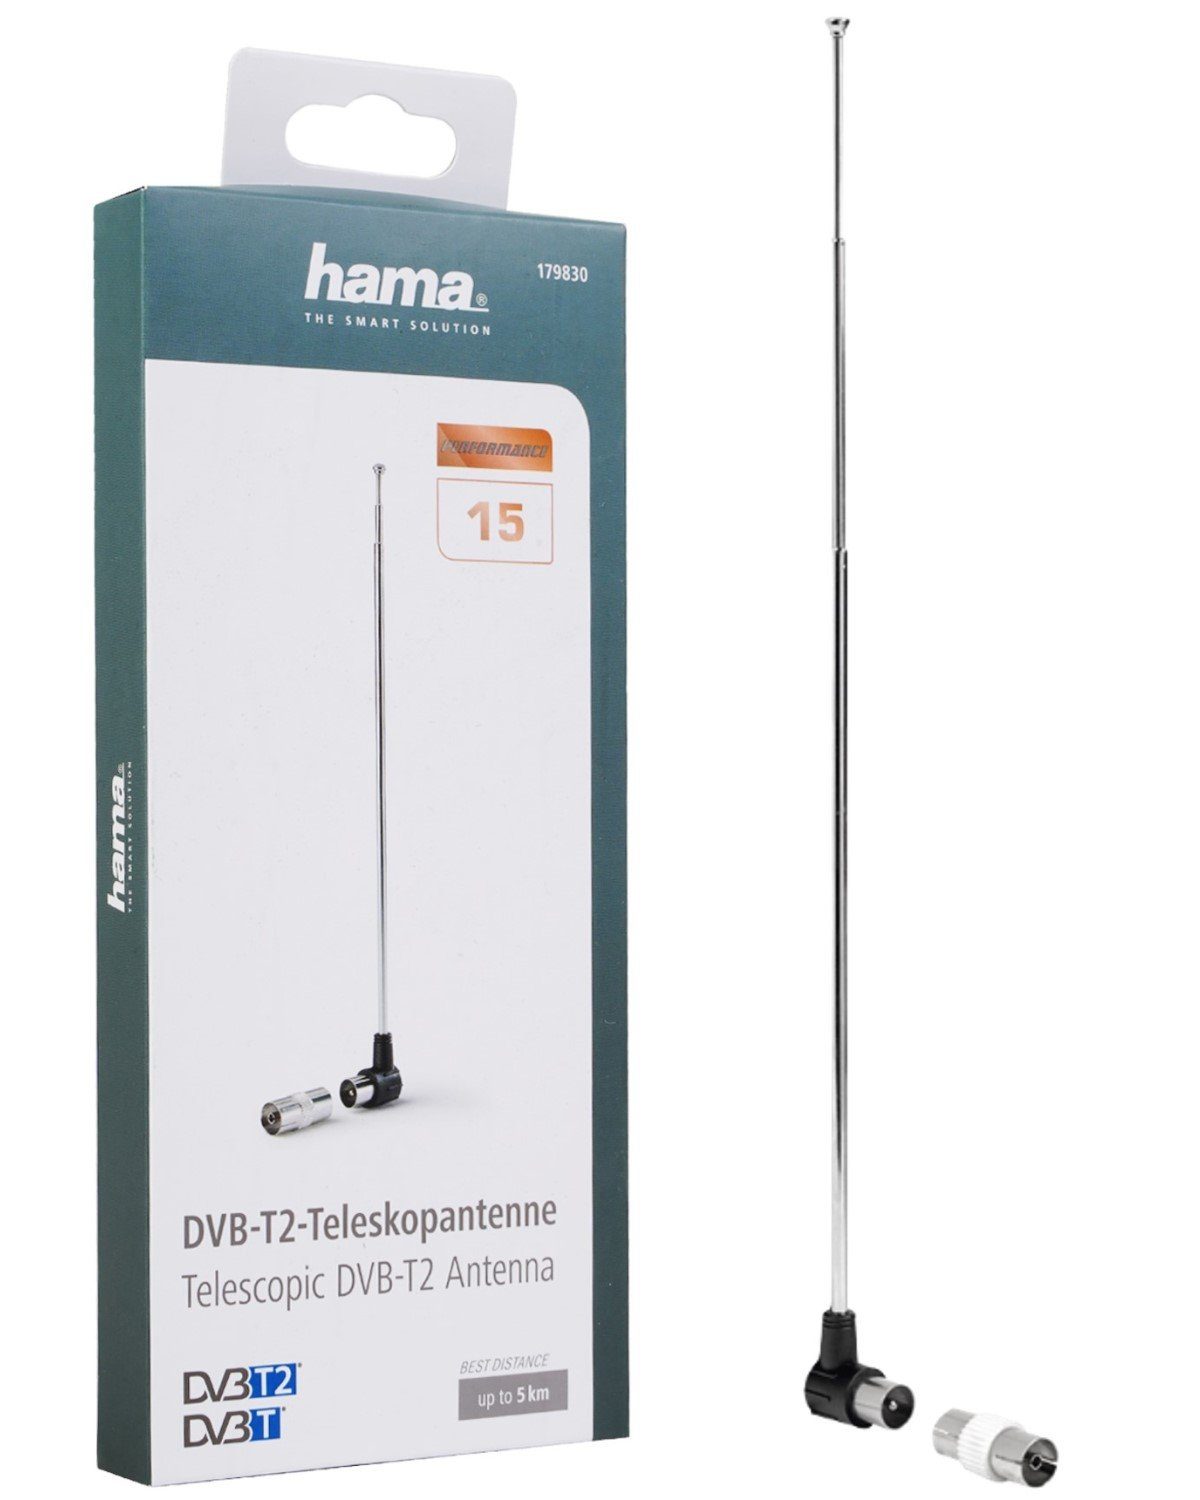 Hama DVB-T2 am TV Innenantenne, HD 4K oder 4K Performance Antenne Notebook Teleskob-Antenne Ultra-HD Radio Passiv FULL Stab-Antenne TV